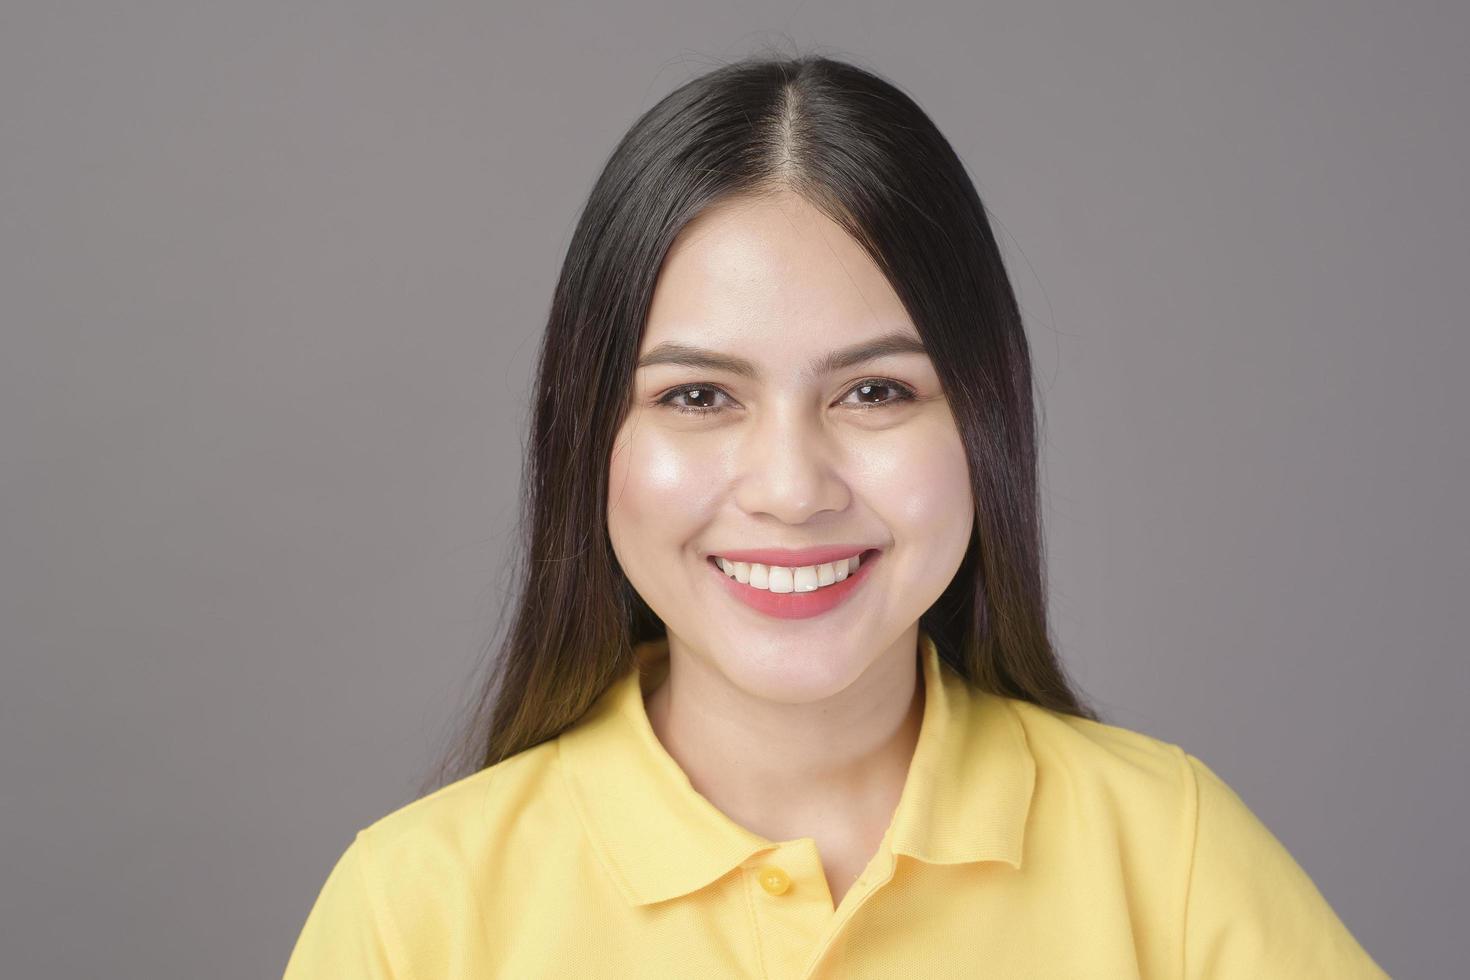 jonge zelfverzekerde mooie vrouw die een geel shirt draagt, staat op een grijze achtergrondstudio foto